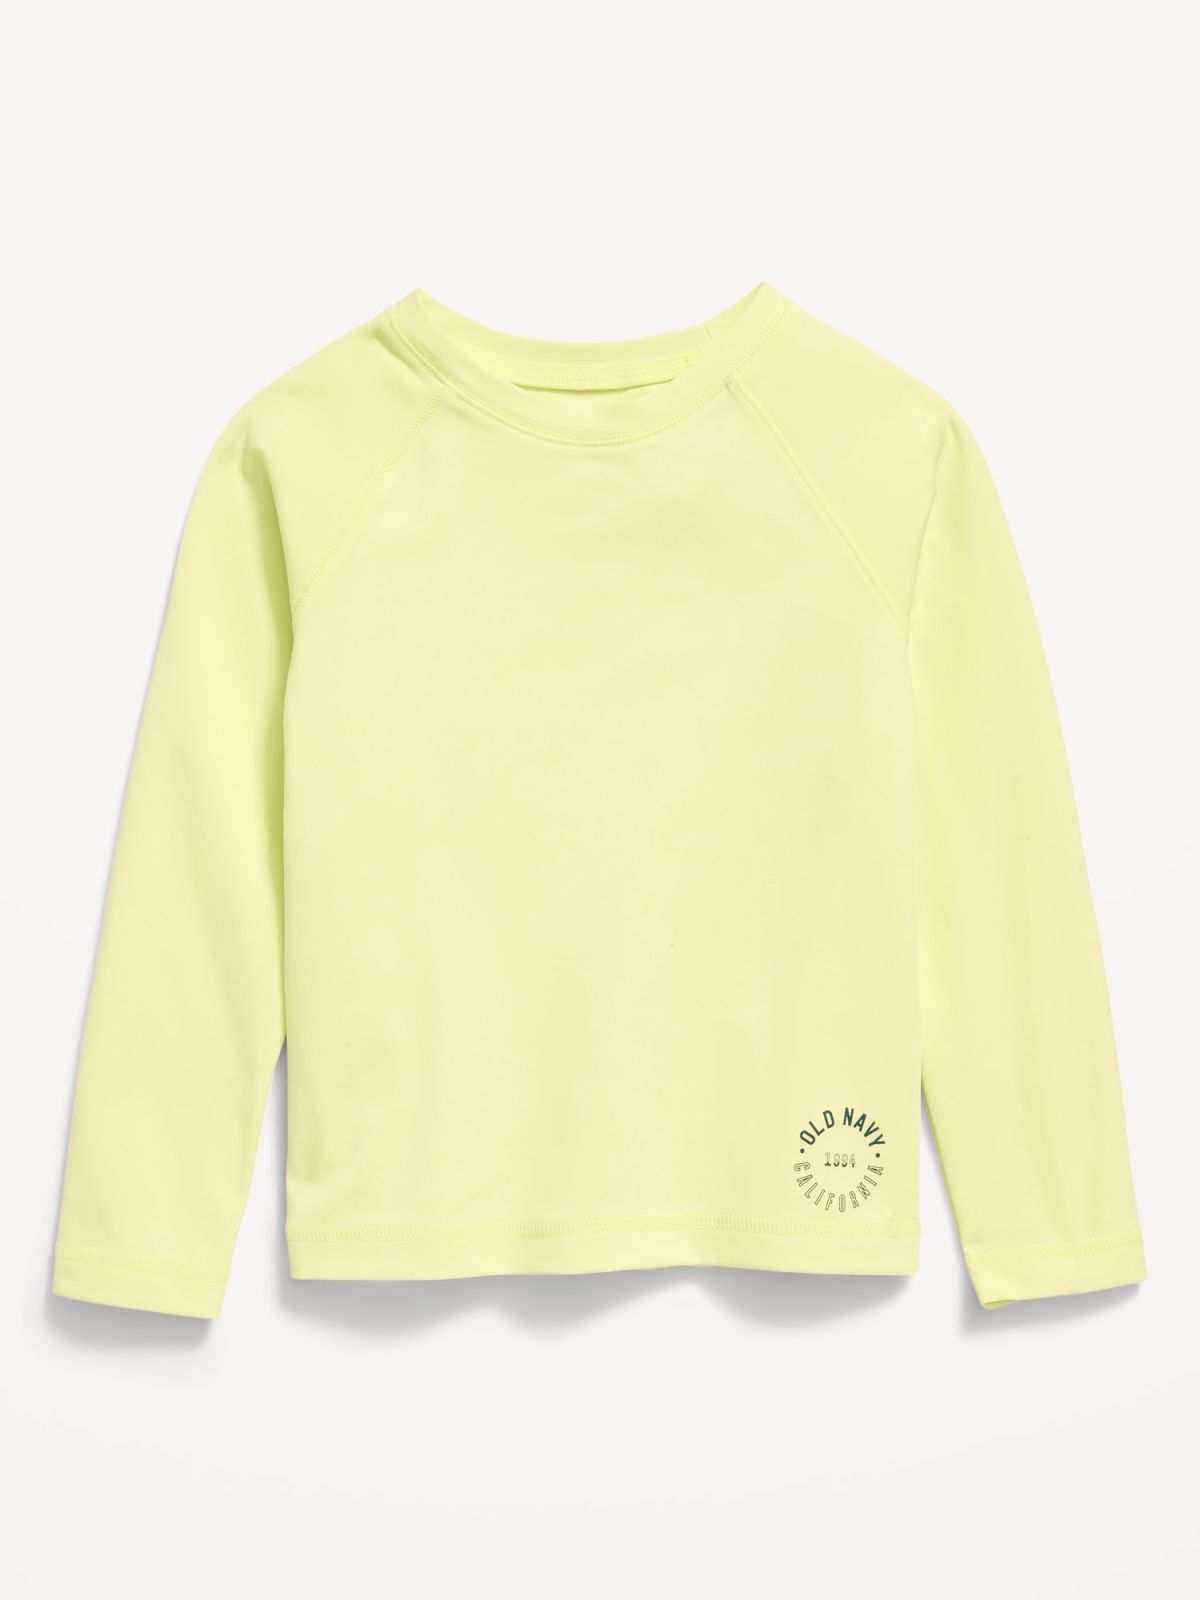  חולצת בגד ים עם הדפס לוגו / בנות של OLD NAVY